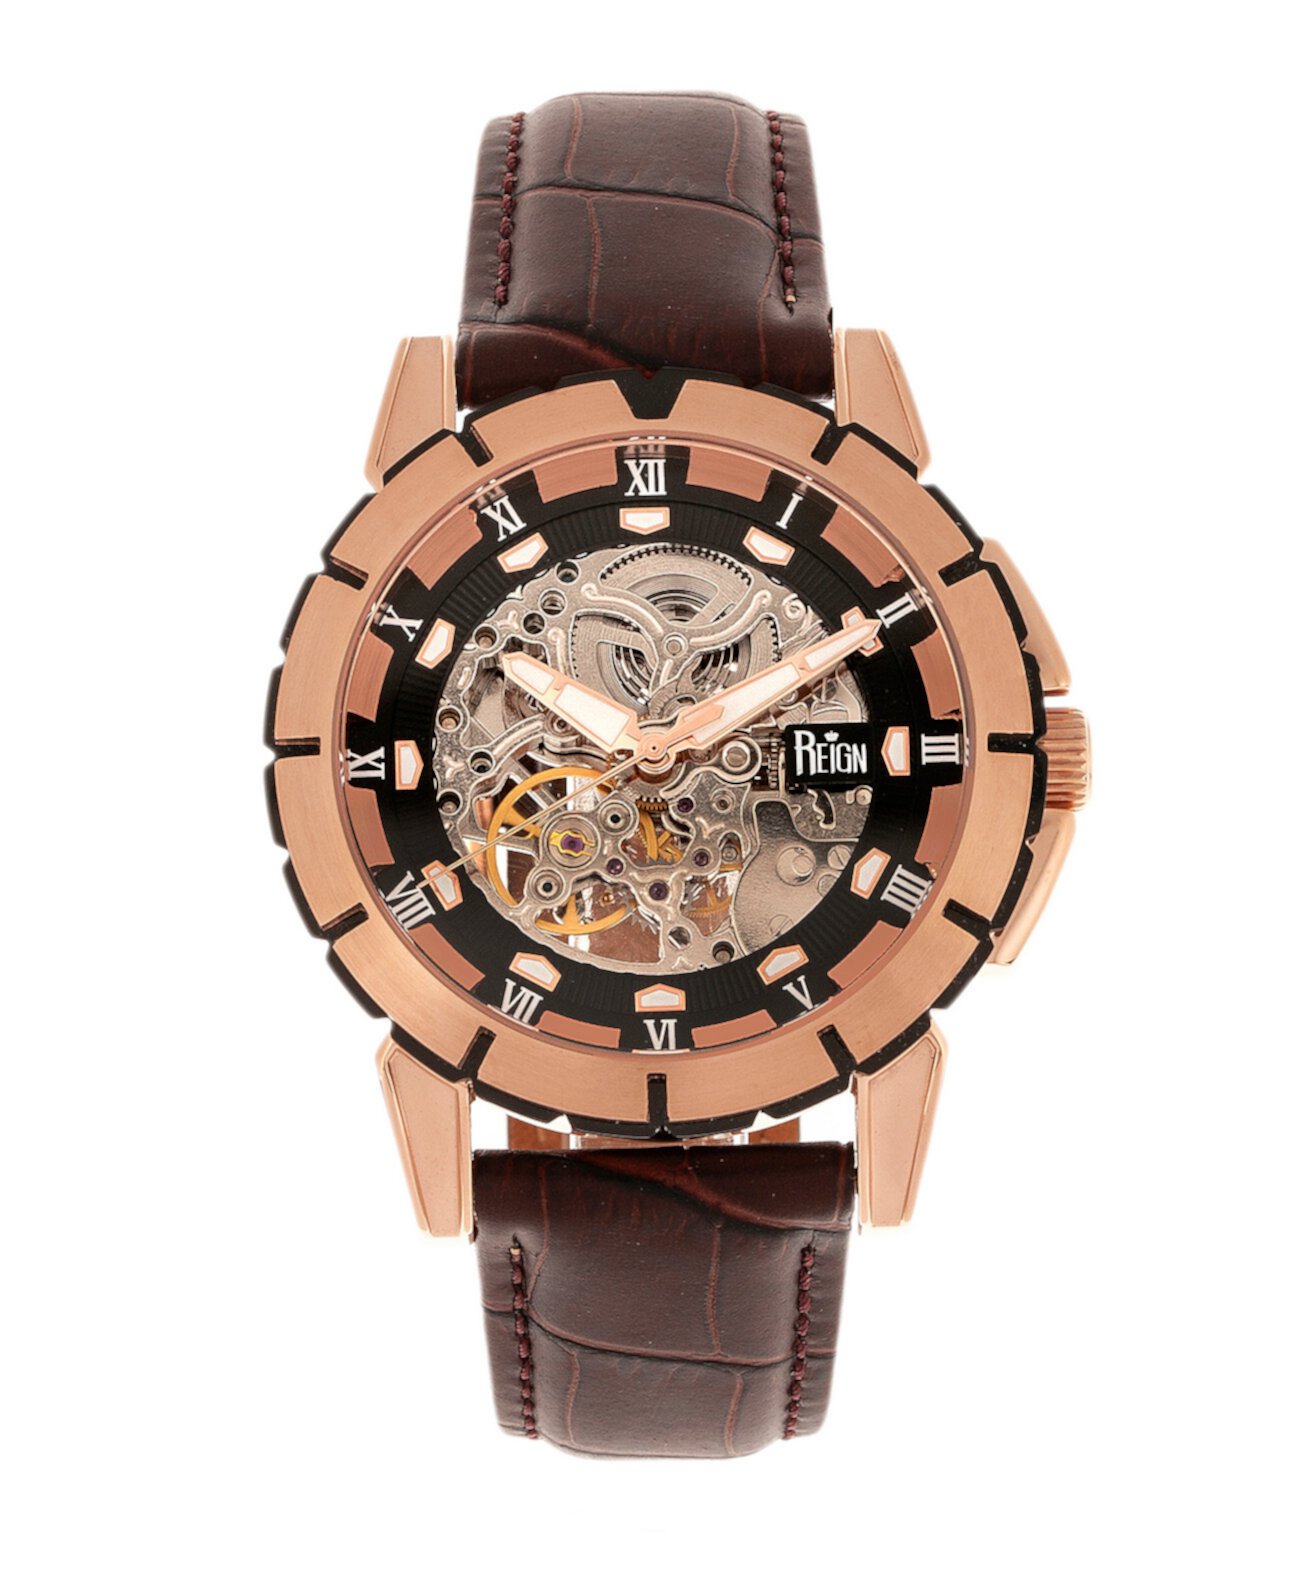 Philippe Автоматический корпус из розового золота, черный циферблат, часы из натуральной коричневой кожи 41 мм Reign